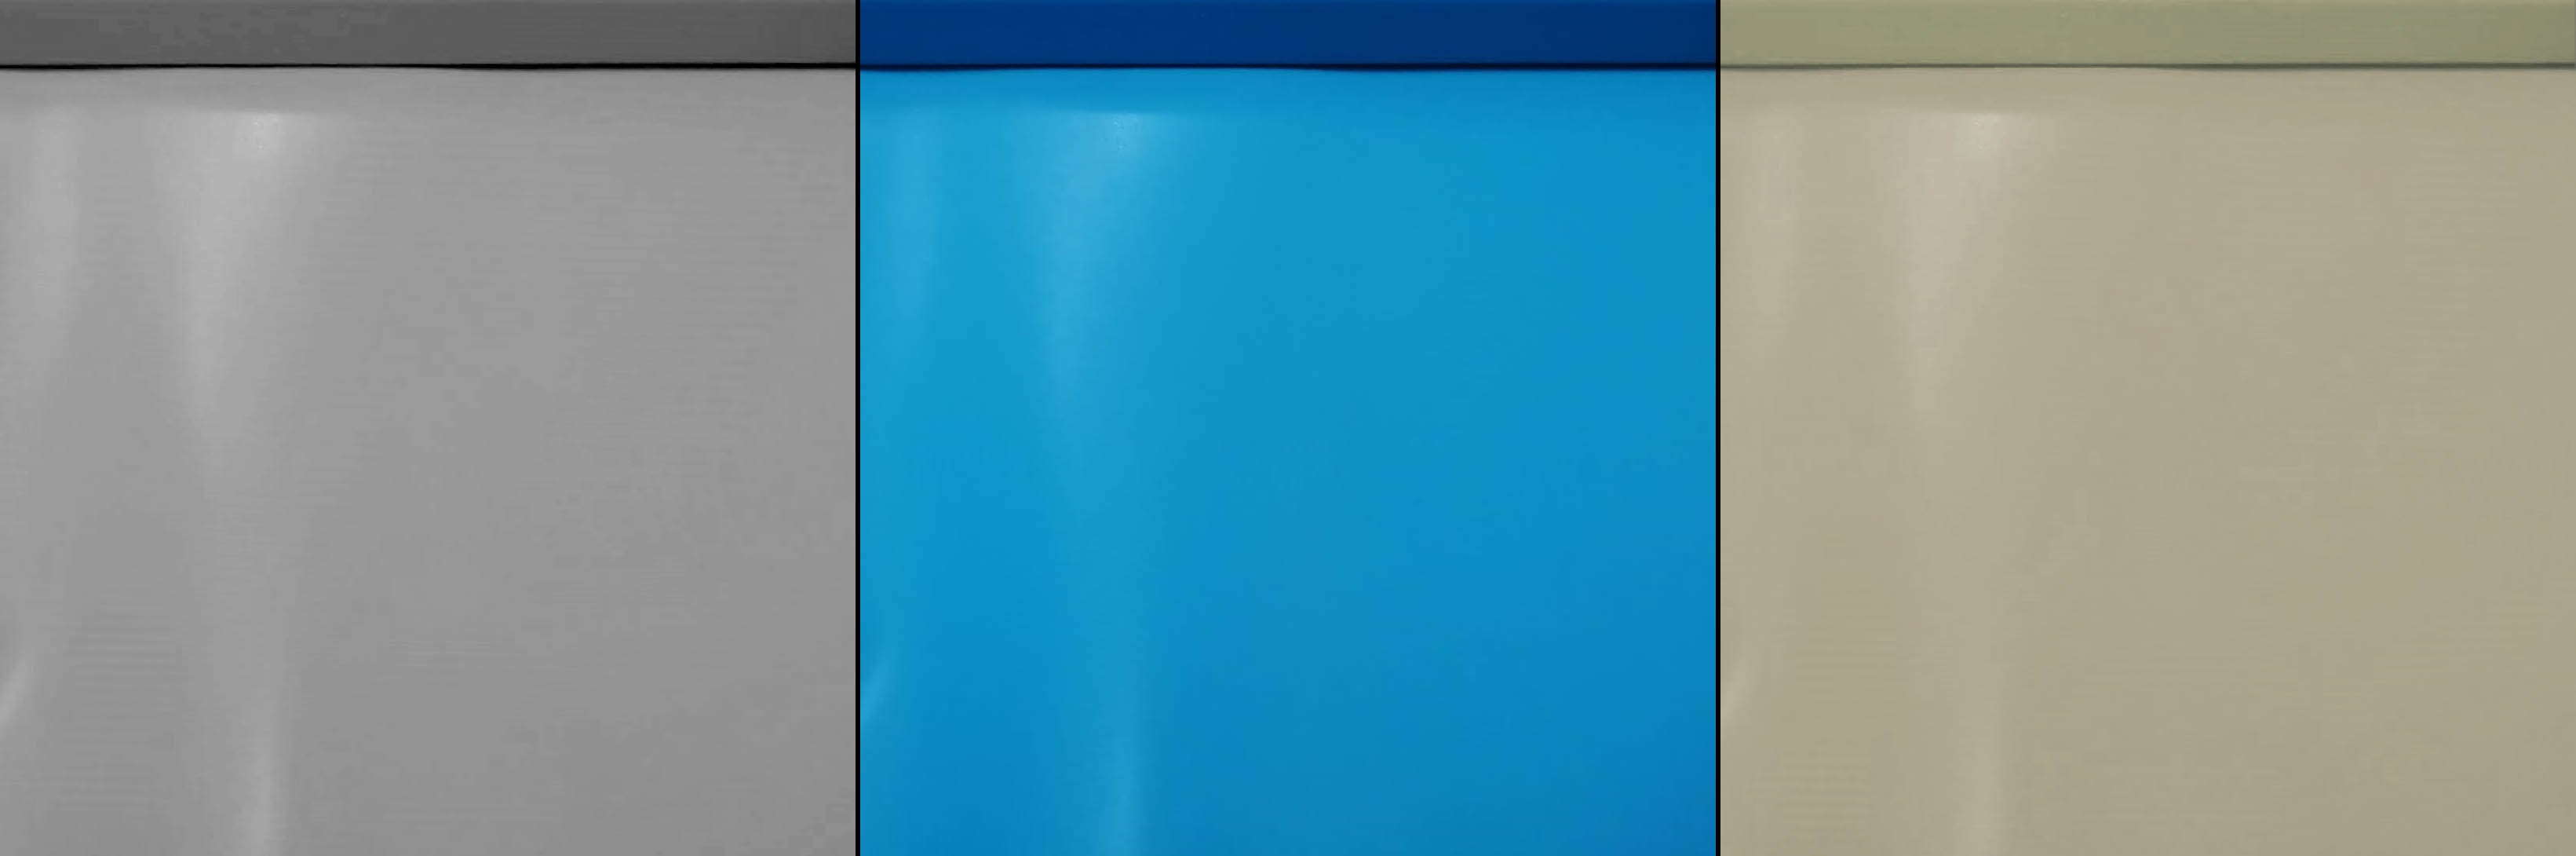 Pontaqua Tierra Inground Pool és Panel Pool medencecsalád. Választható Tierra Inground belső fólia színek: felhő szürke, kék, homok. Panel Pool fólia: kék.